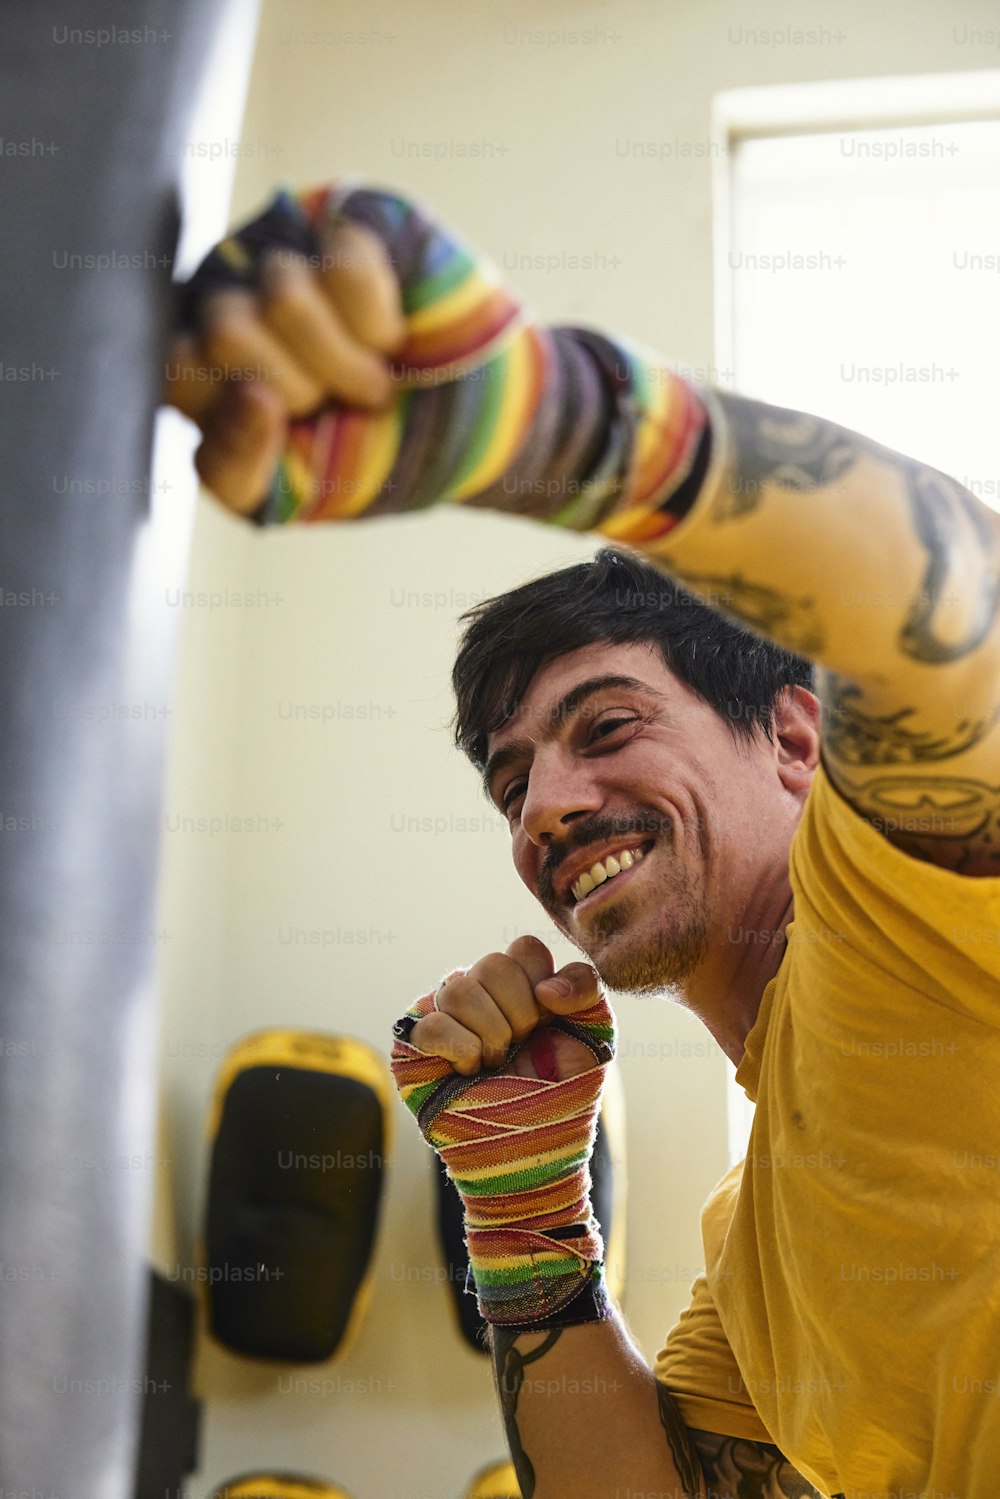 Un hombre con una camisa amarilla sostiene un objeto colorido